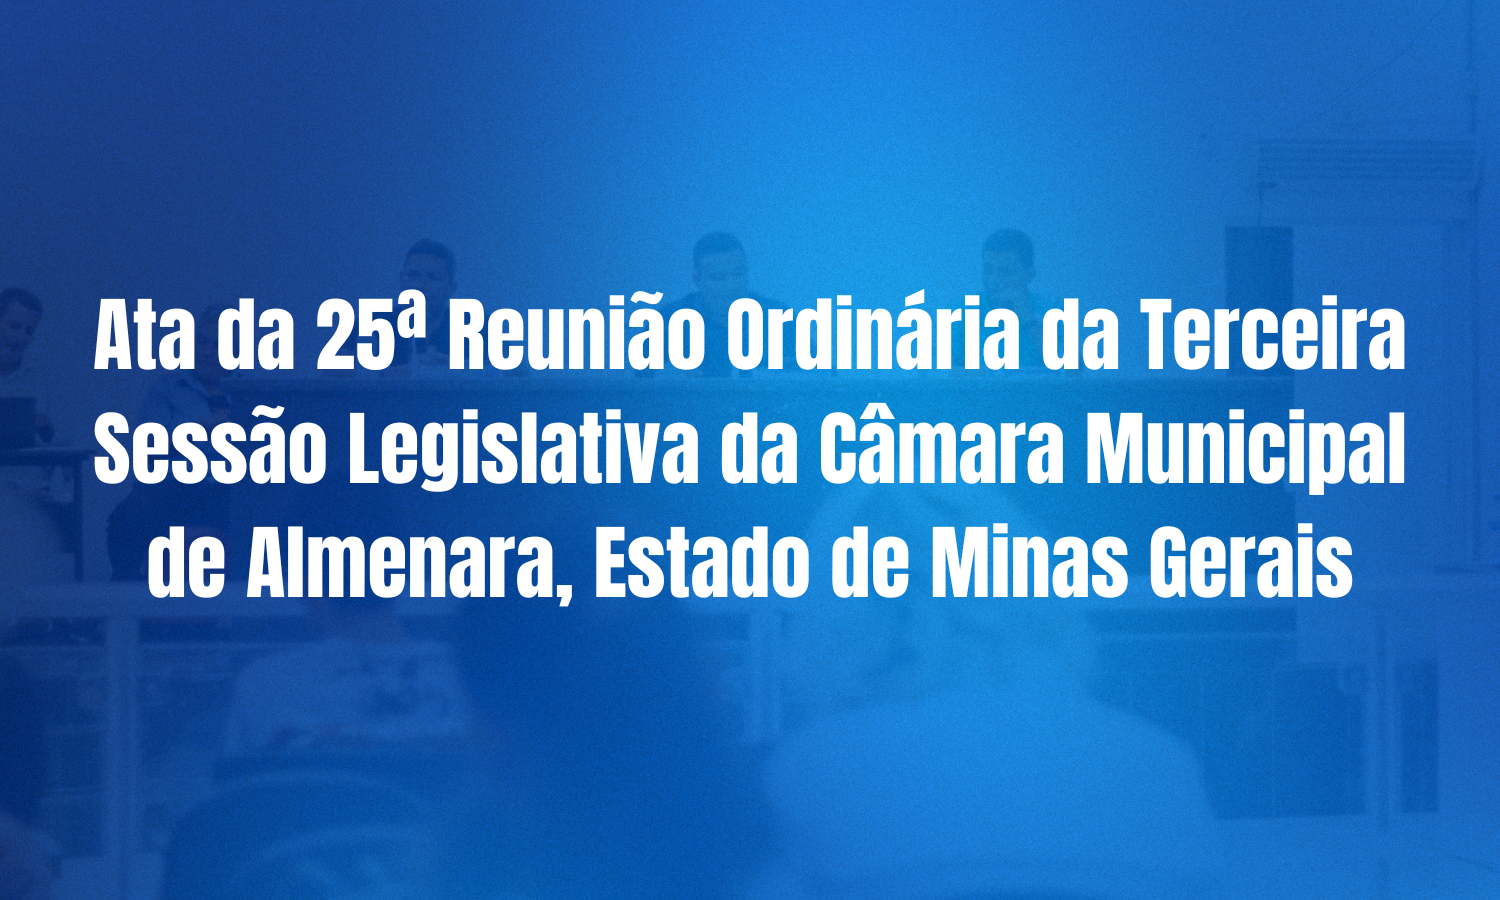 Ata da 25ª Reunião Ordinária da Terceira Sessão Legislativa da Câmara Municipal de Almenara, Estado de Minas Gerais